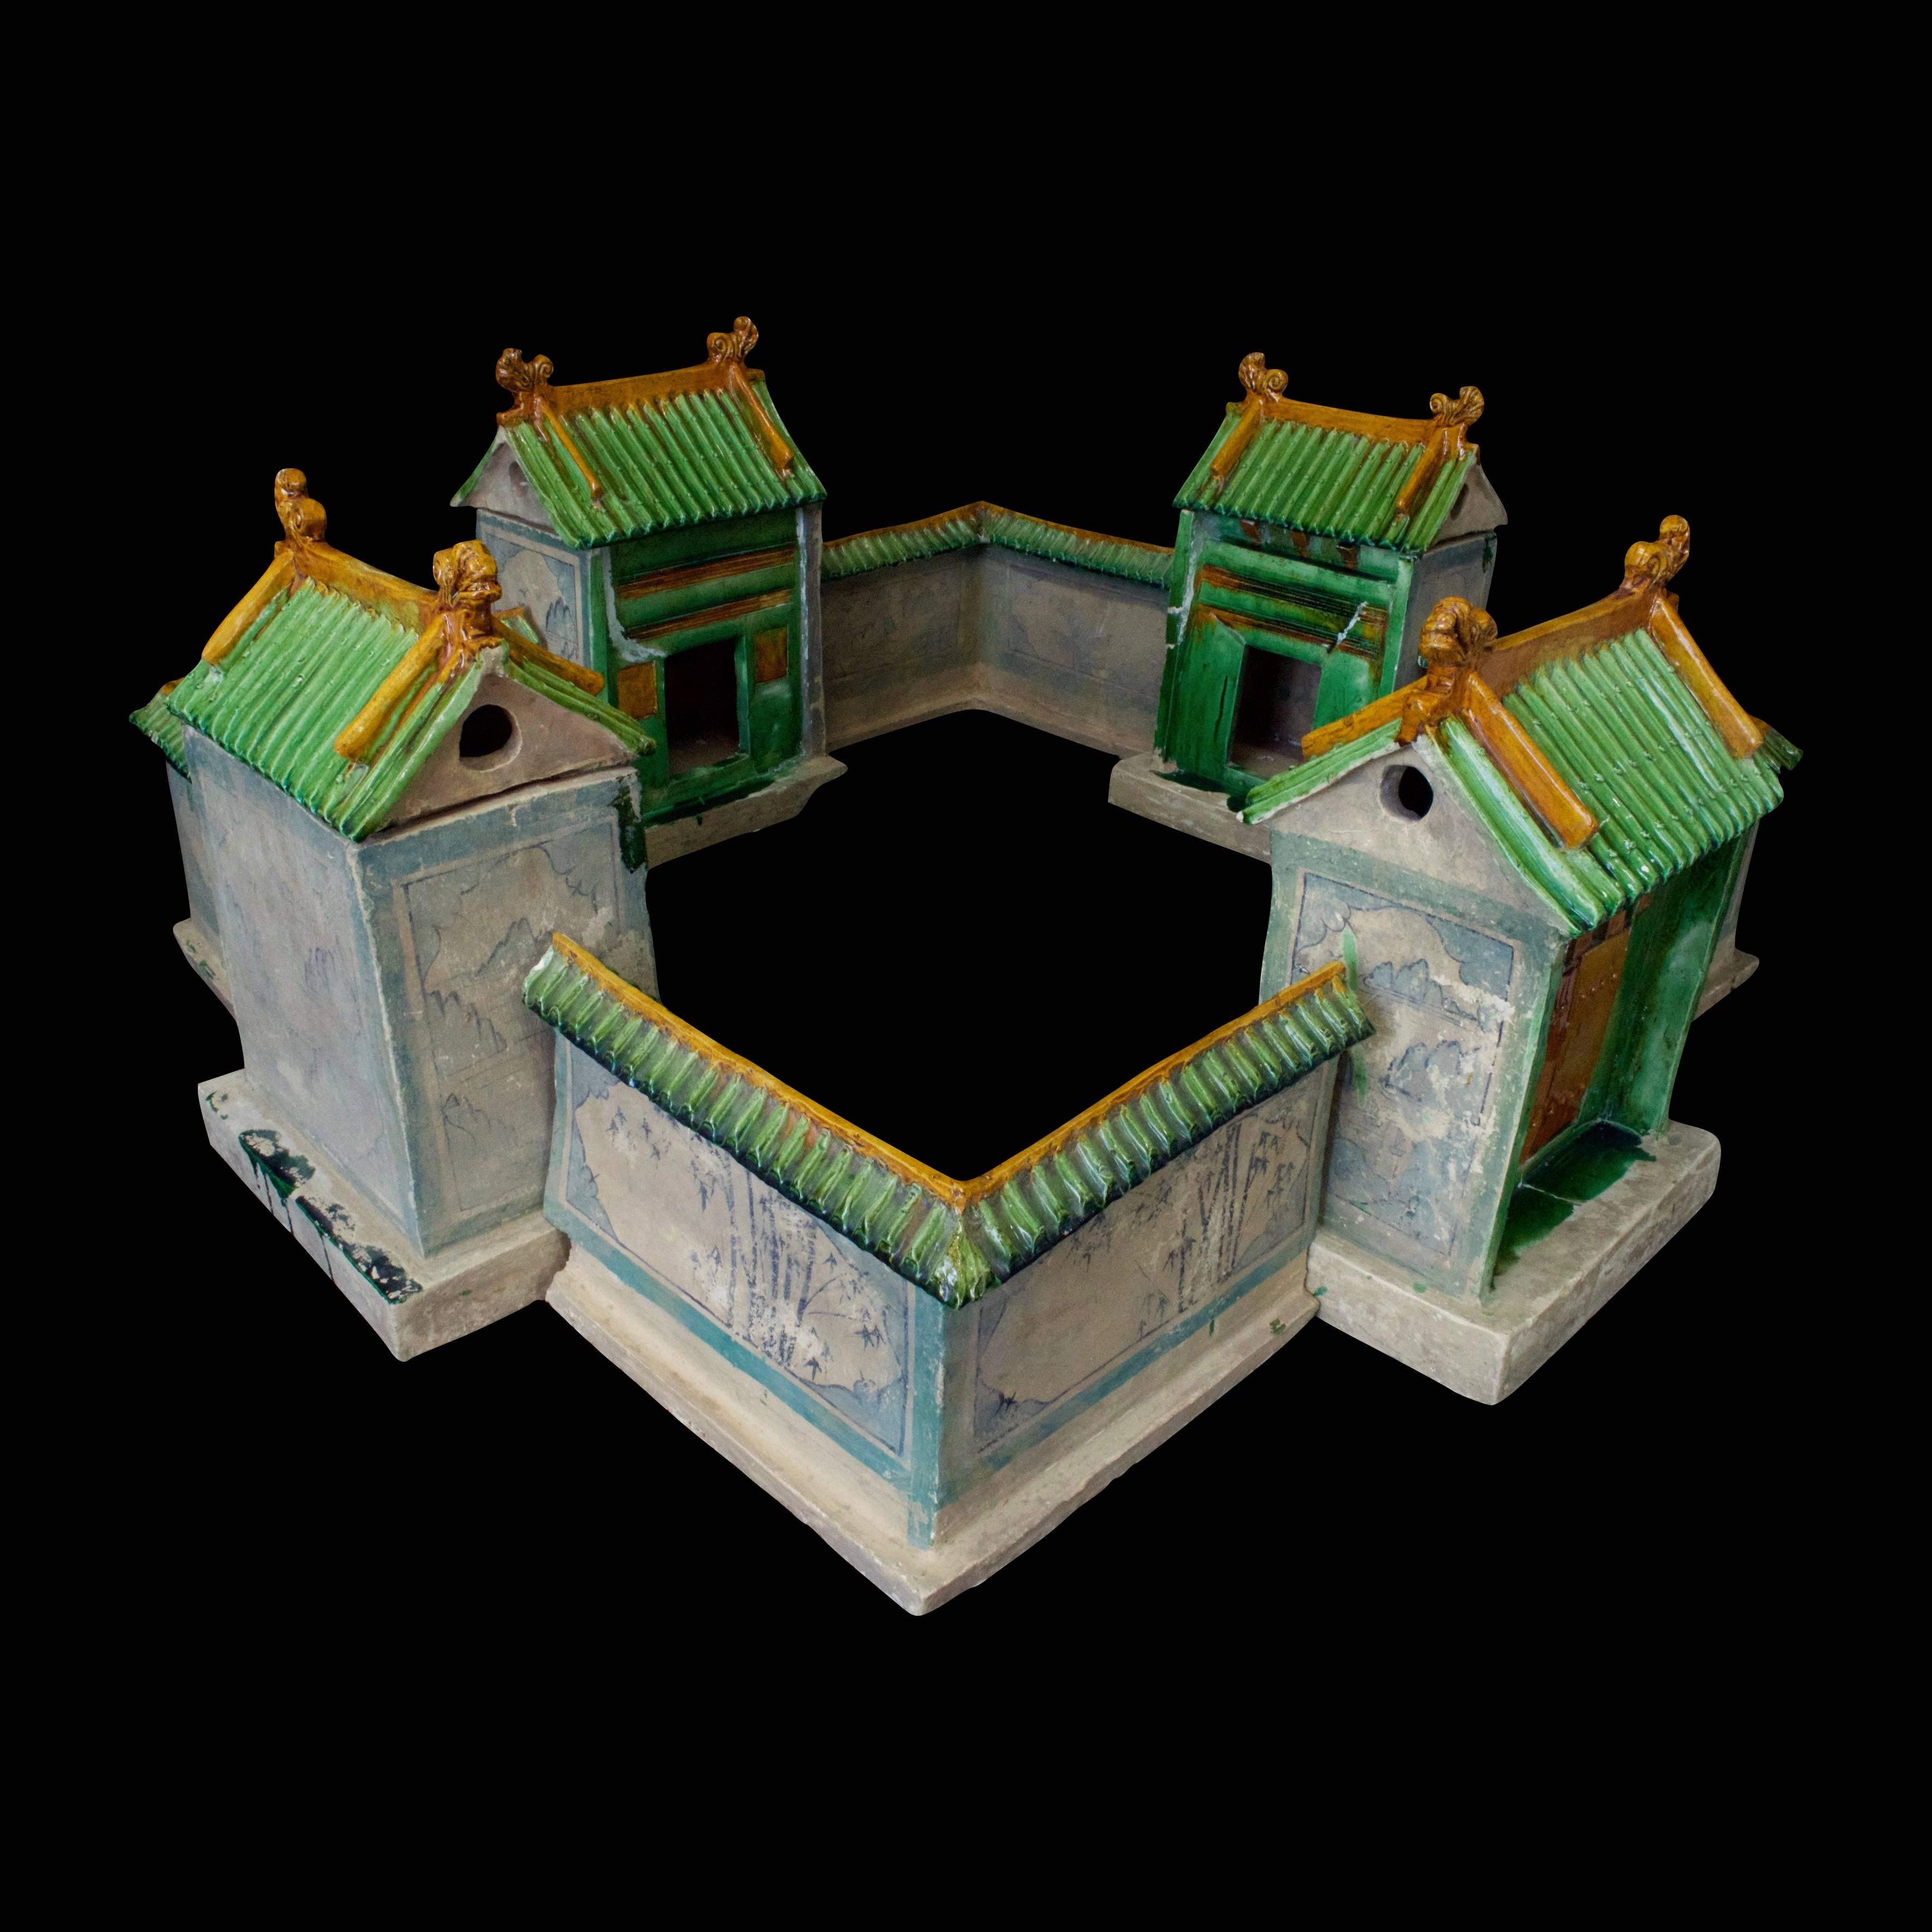 Äußerst seltenes chinesisches Modell einer Landvilla für die königlichen Höflinge und Ministerien der Ming-Dynastie -1368-1644 n. Chr.- mit drei Gästehäusern und einem Haupteingang. Die Villa ist von einer viereckigen Mauer umgeben, die mit